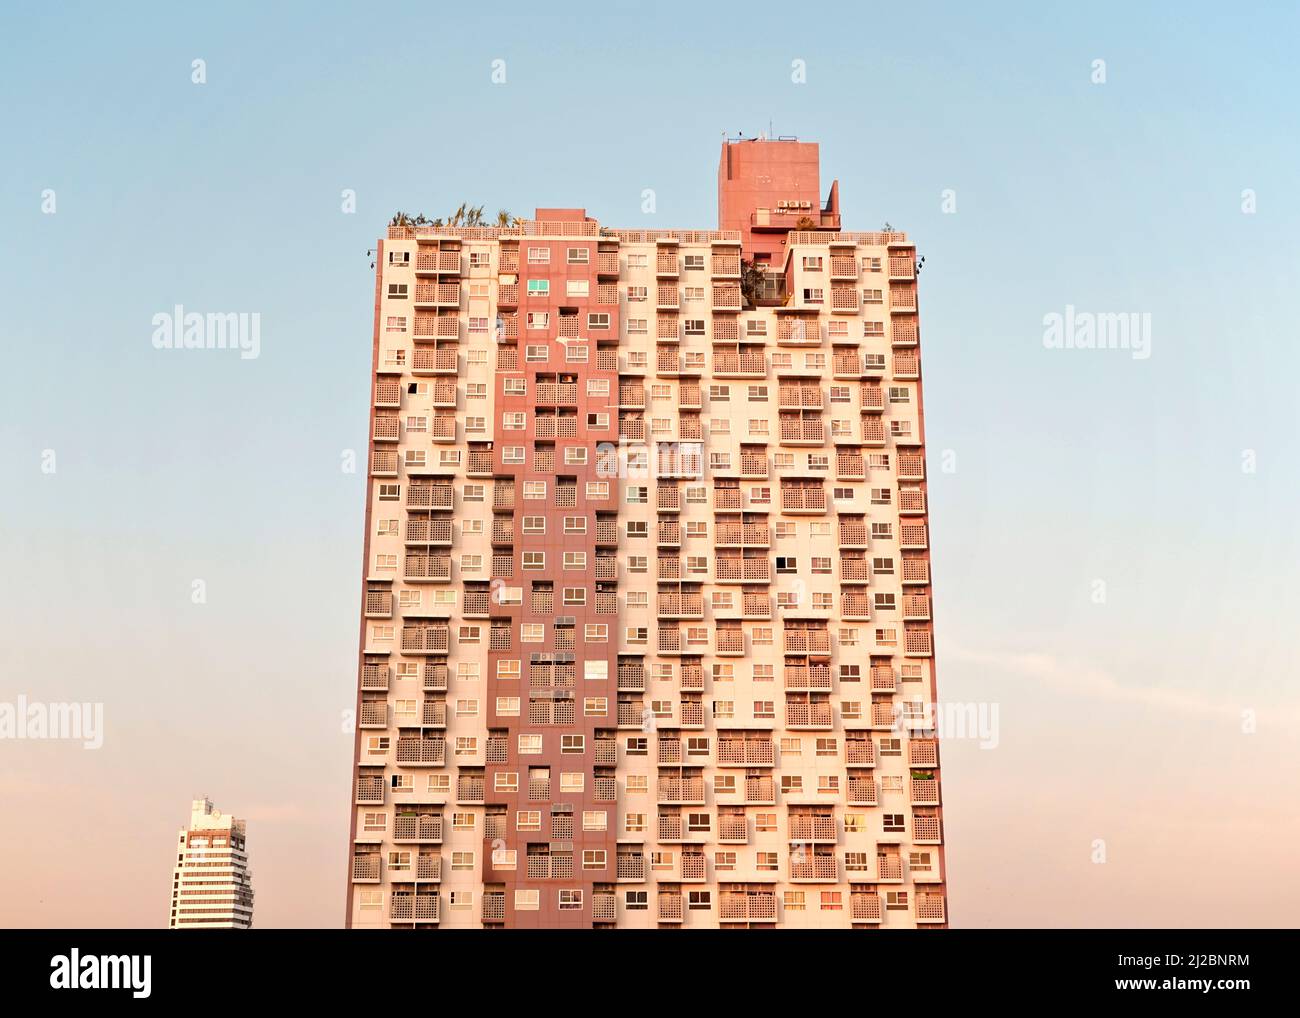 Alto edificio urbano marrone, tonalita' terrene, moderno edificio cosmopolita e cosmopolita a ridosso di uno splendido skyline di colore blu pastello. Foto Stock